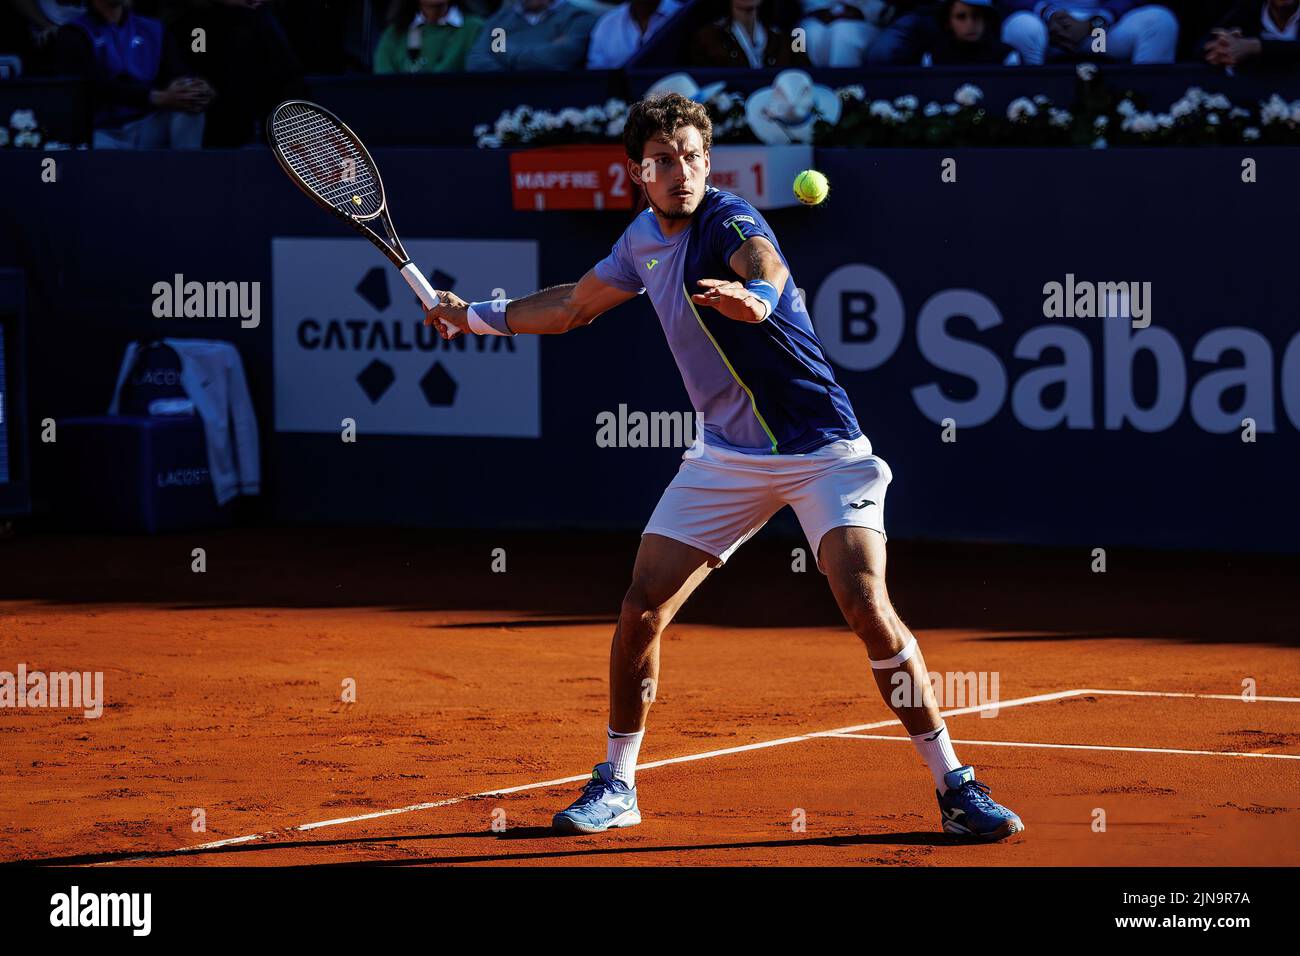 BARCELLONA - Apr 24: Pablo Carreno Busta in azione durante il Torneo finale di tennis Open Banc Sabadell di Barcellona al Real Club De Tenis di Barcellona su A Foto Stock